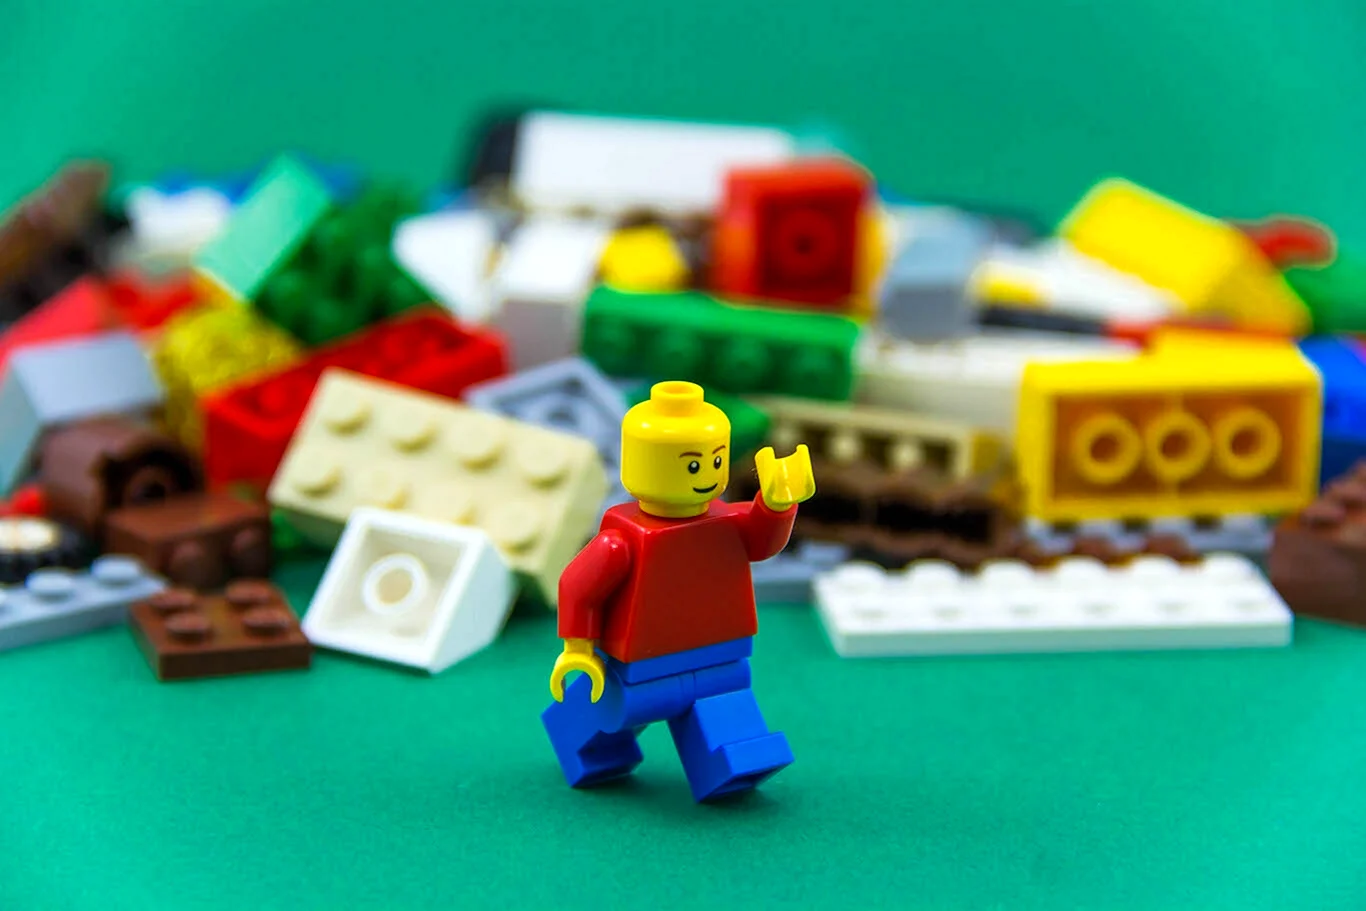 LEGO Innovation